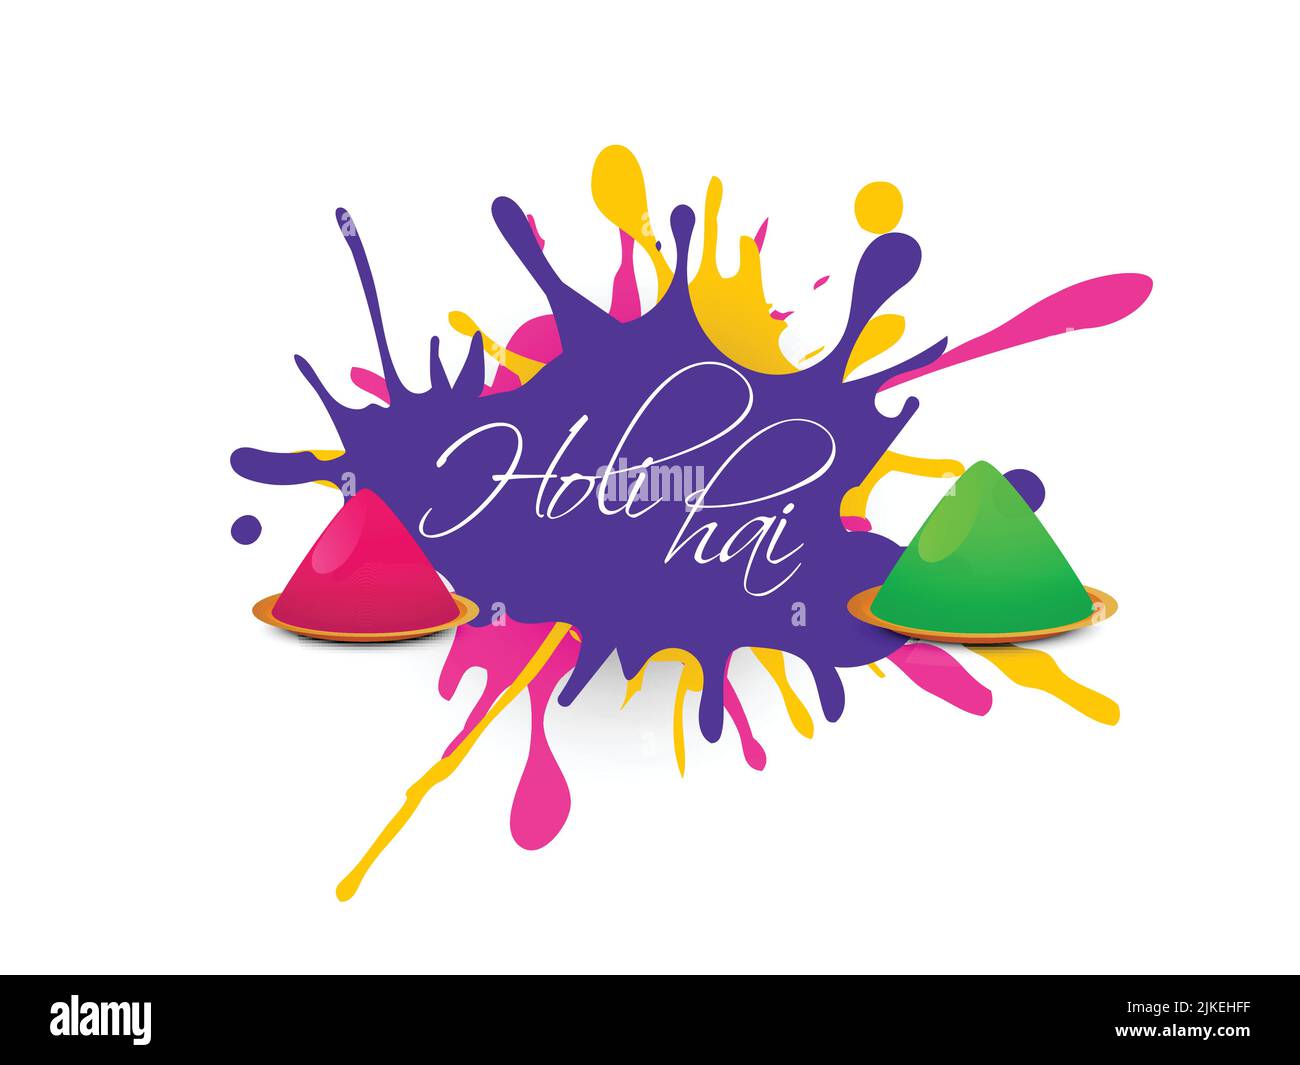 Indisches Festival der Farben, Happy Holi Konzept mit glänzenden Drycolors (gulal) und Farben spritzen vor weißem Hintergrund, mit Text Holi Hai (IT's Holi Stock Vektor